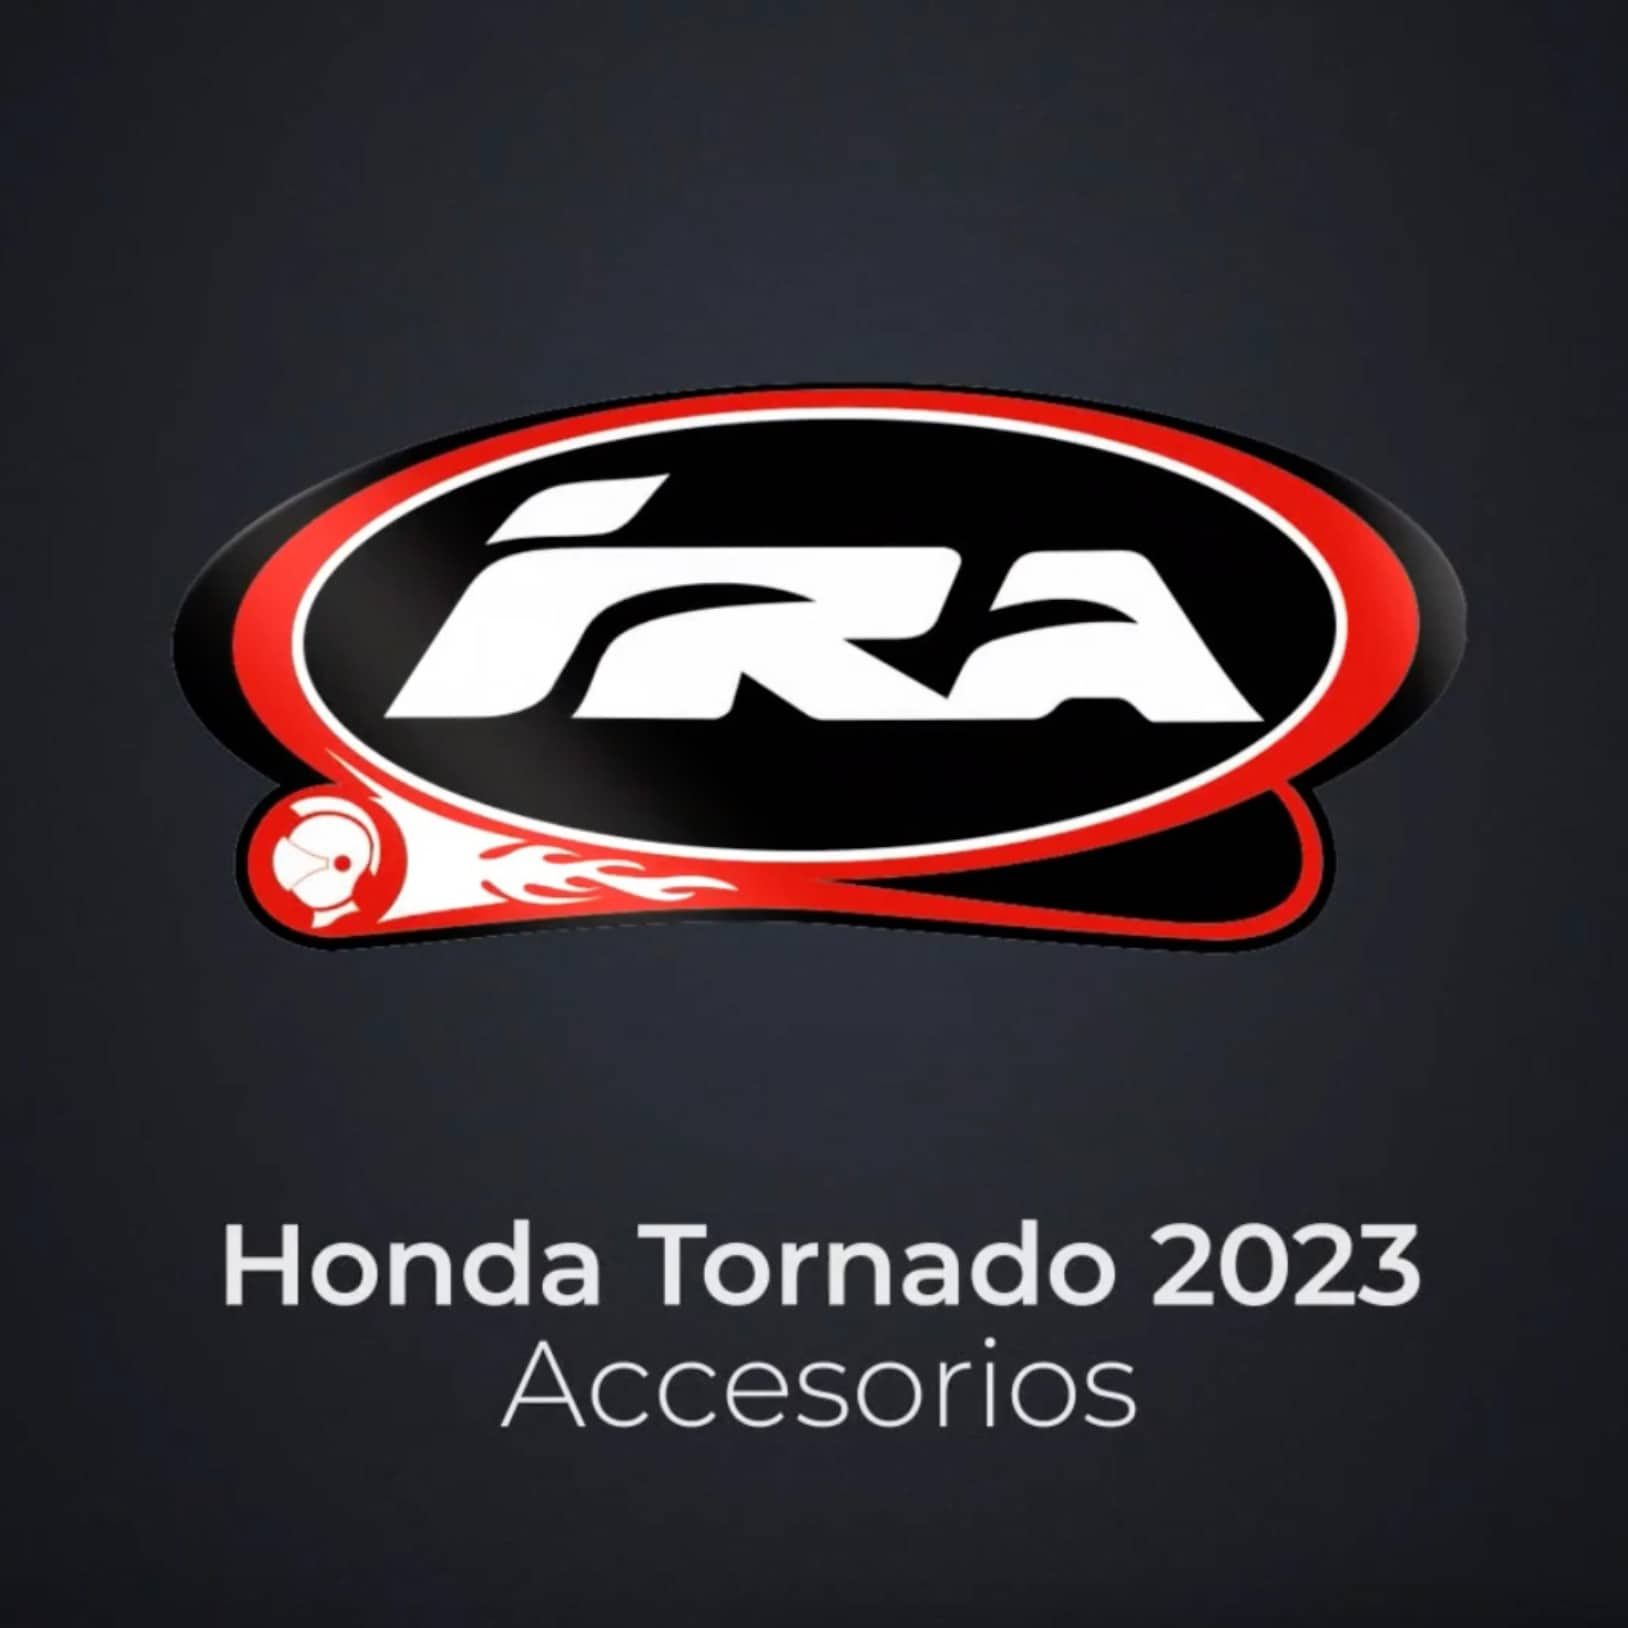 Honda Tornado 2023